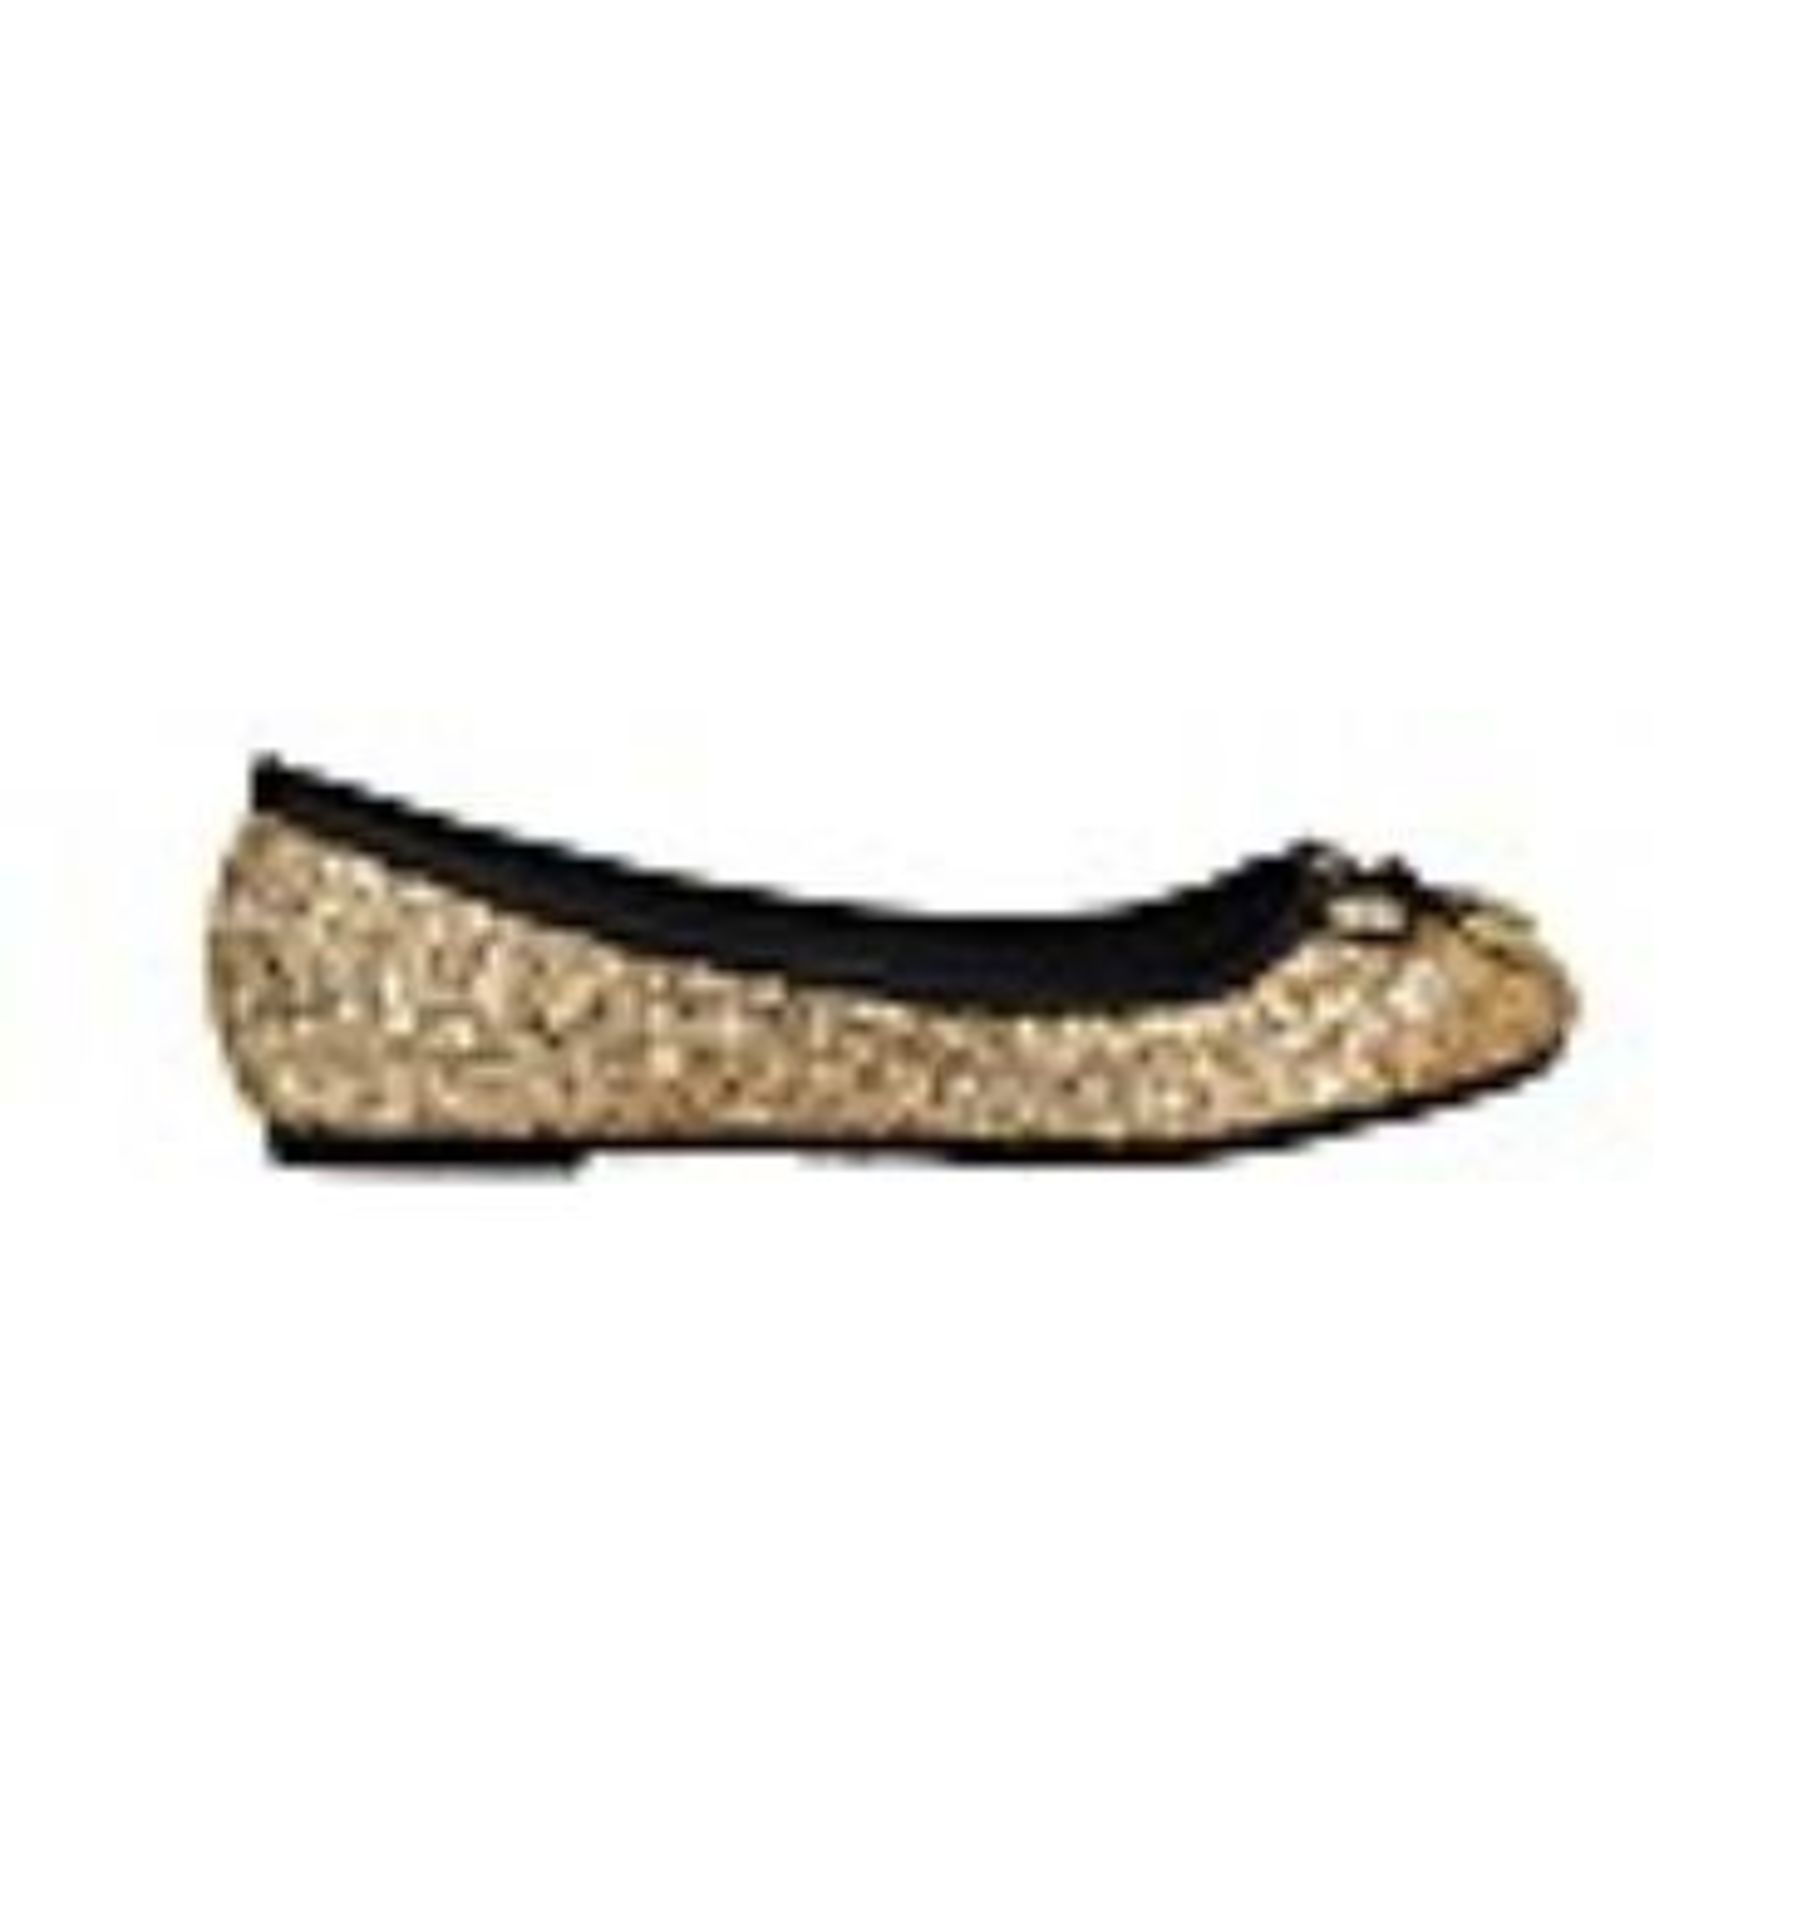 + VAT Brand New Pair Gold Glitter Ballerina Pump Shoes Size 6